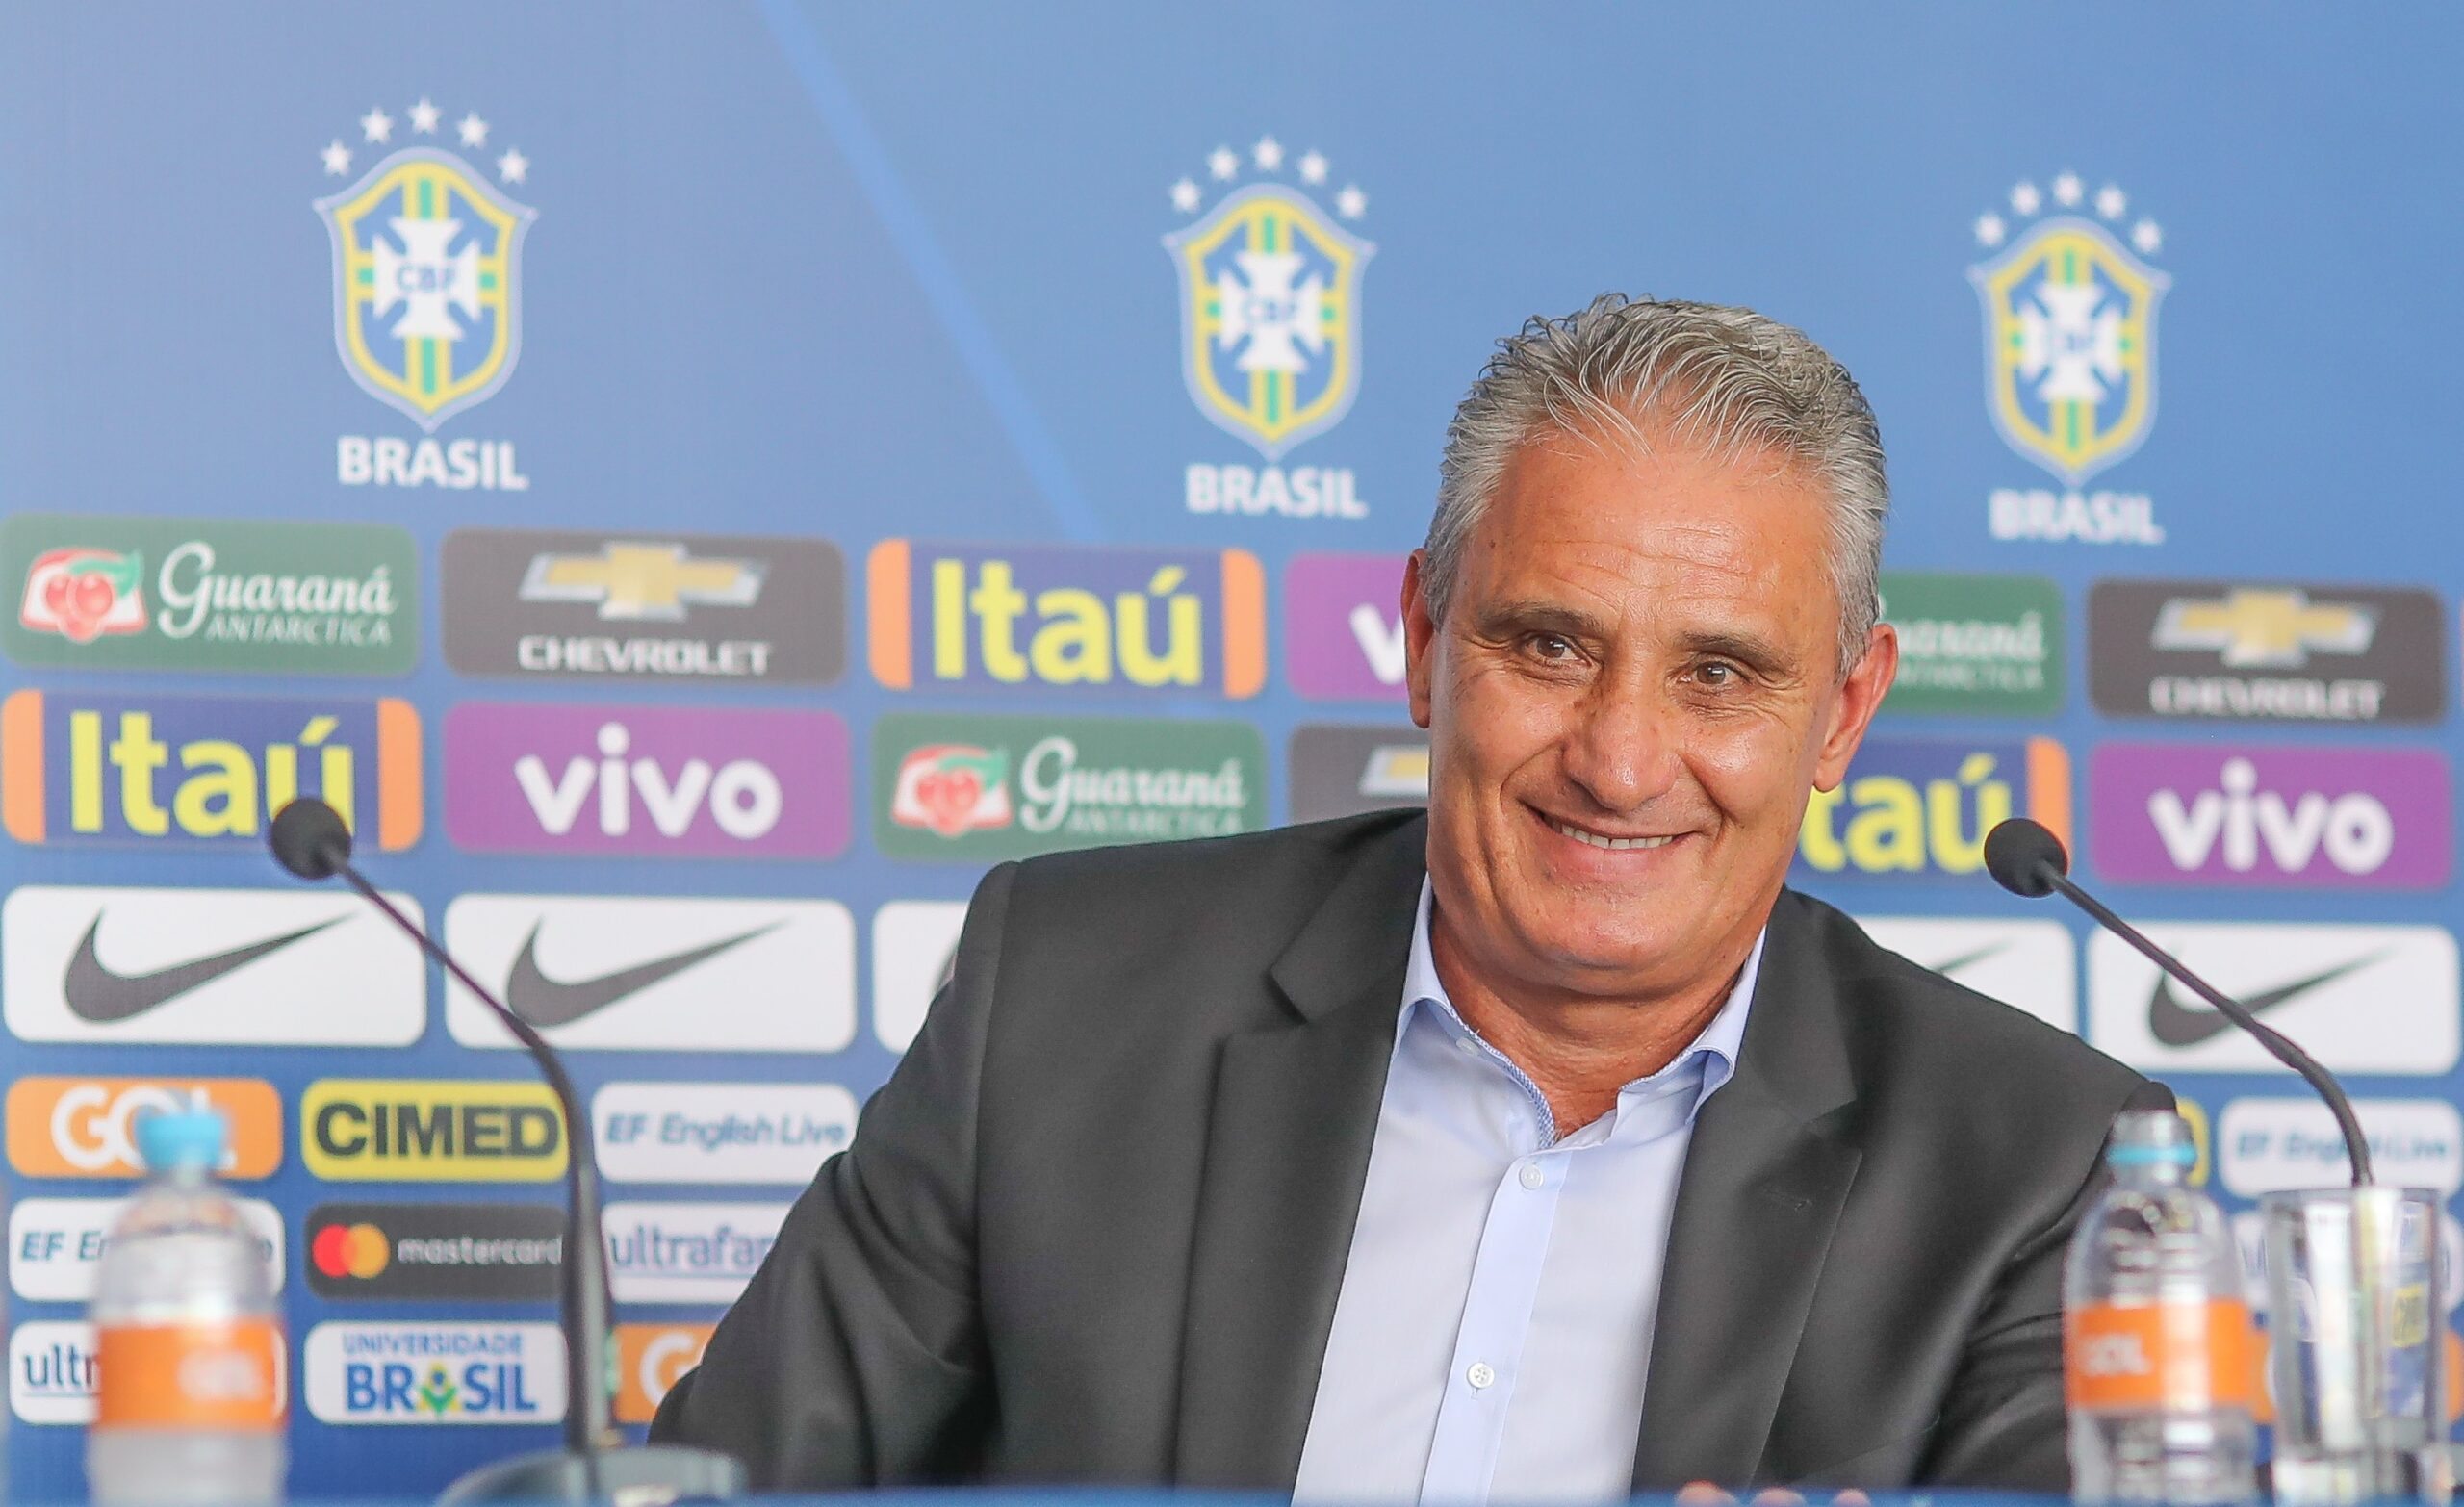 Pedro e Raphael Veiga fora de convocação da Seleção Brasileira? Tite explica o motivo